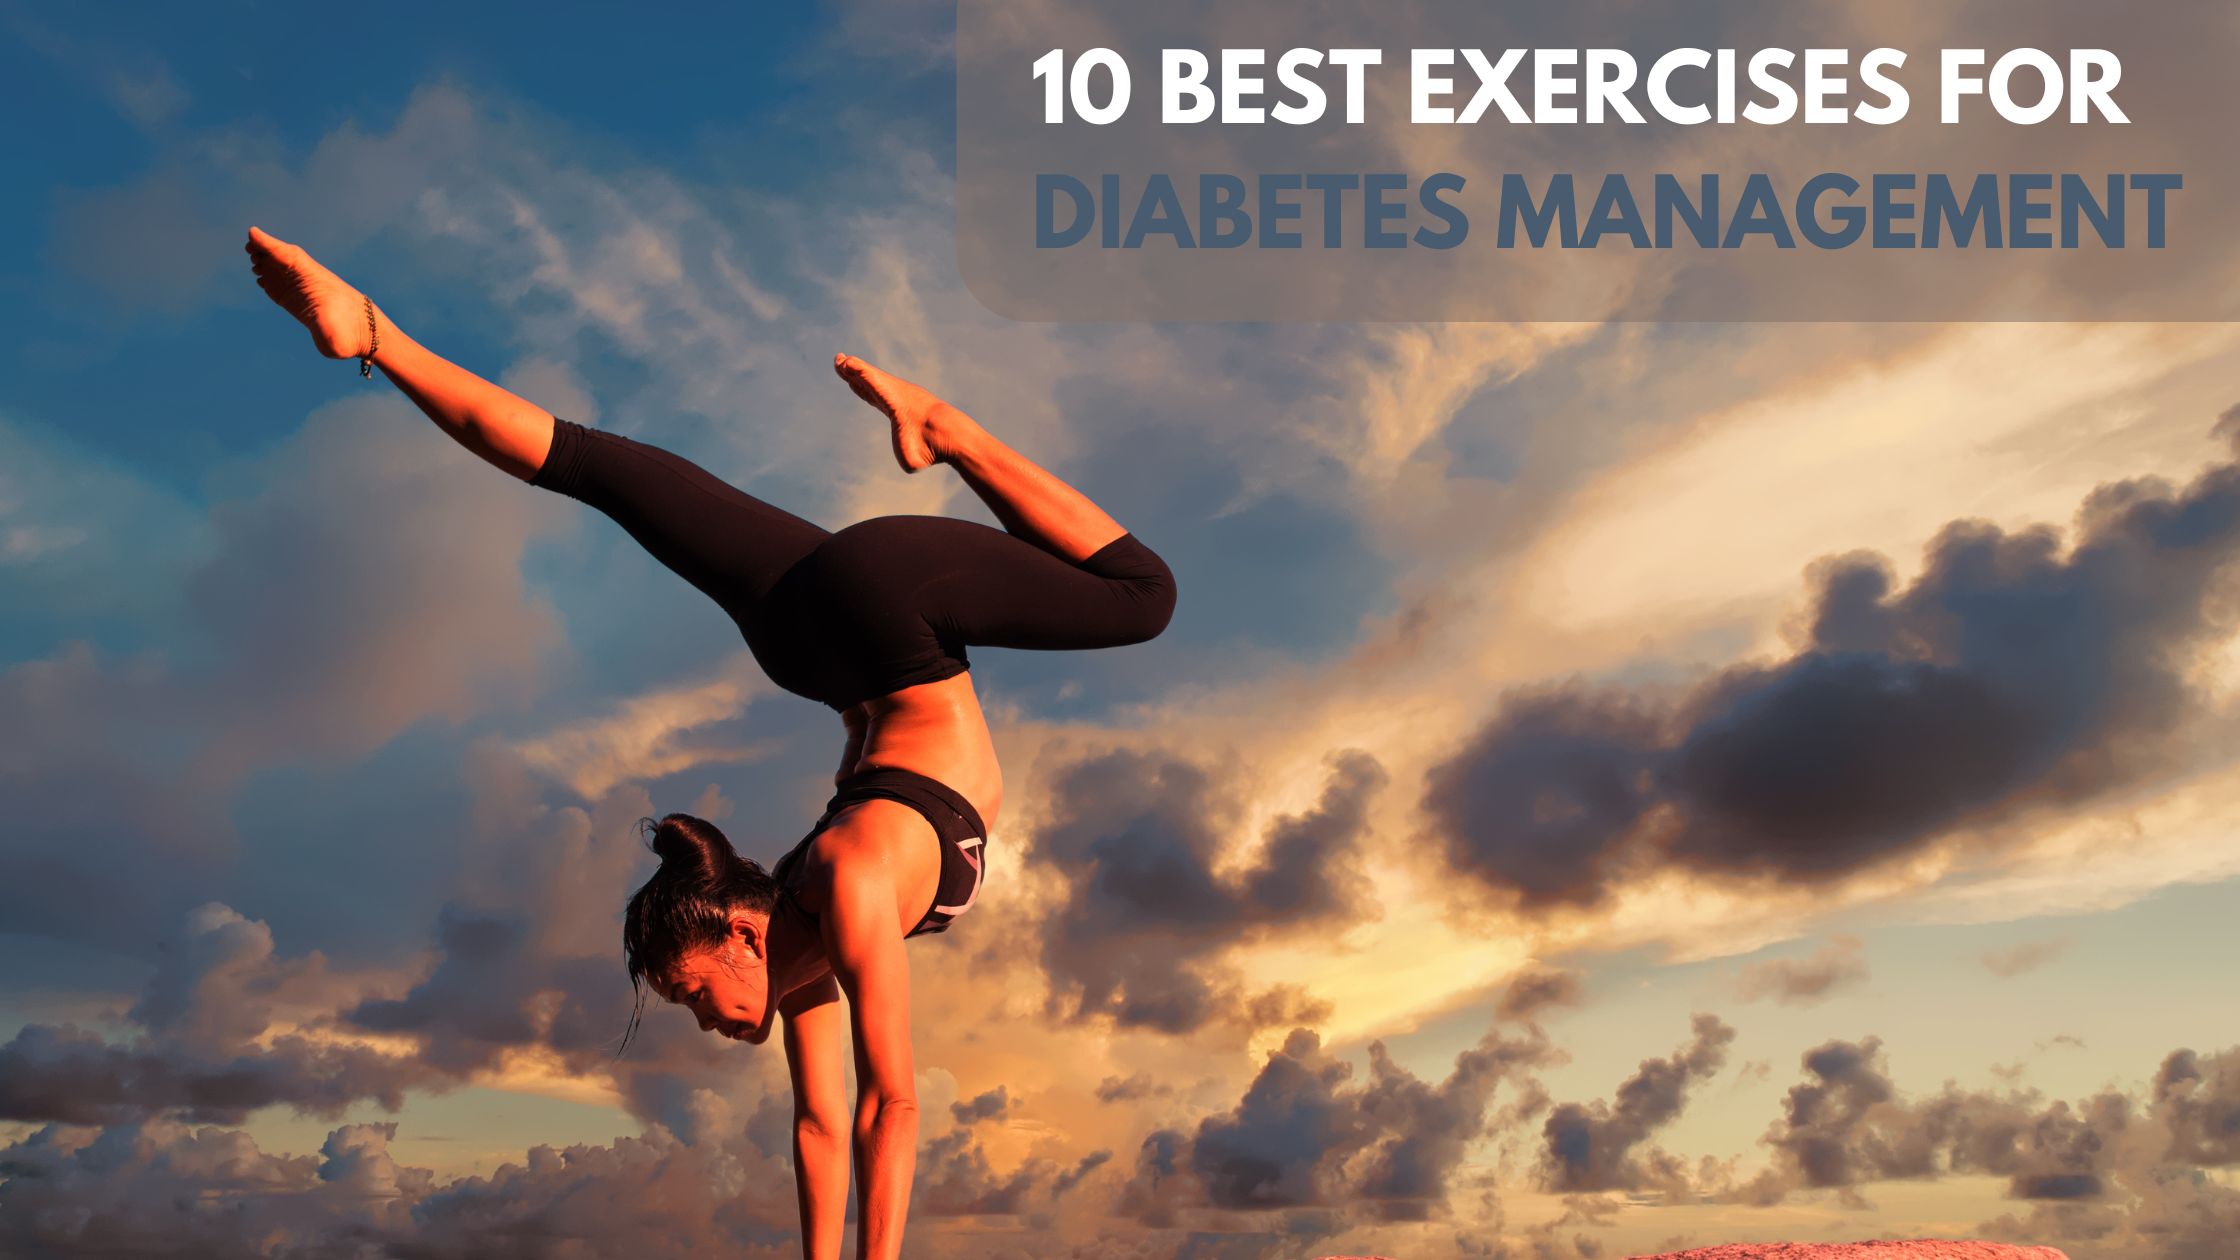 10 Best Exercises for Diabetes Management